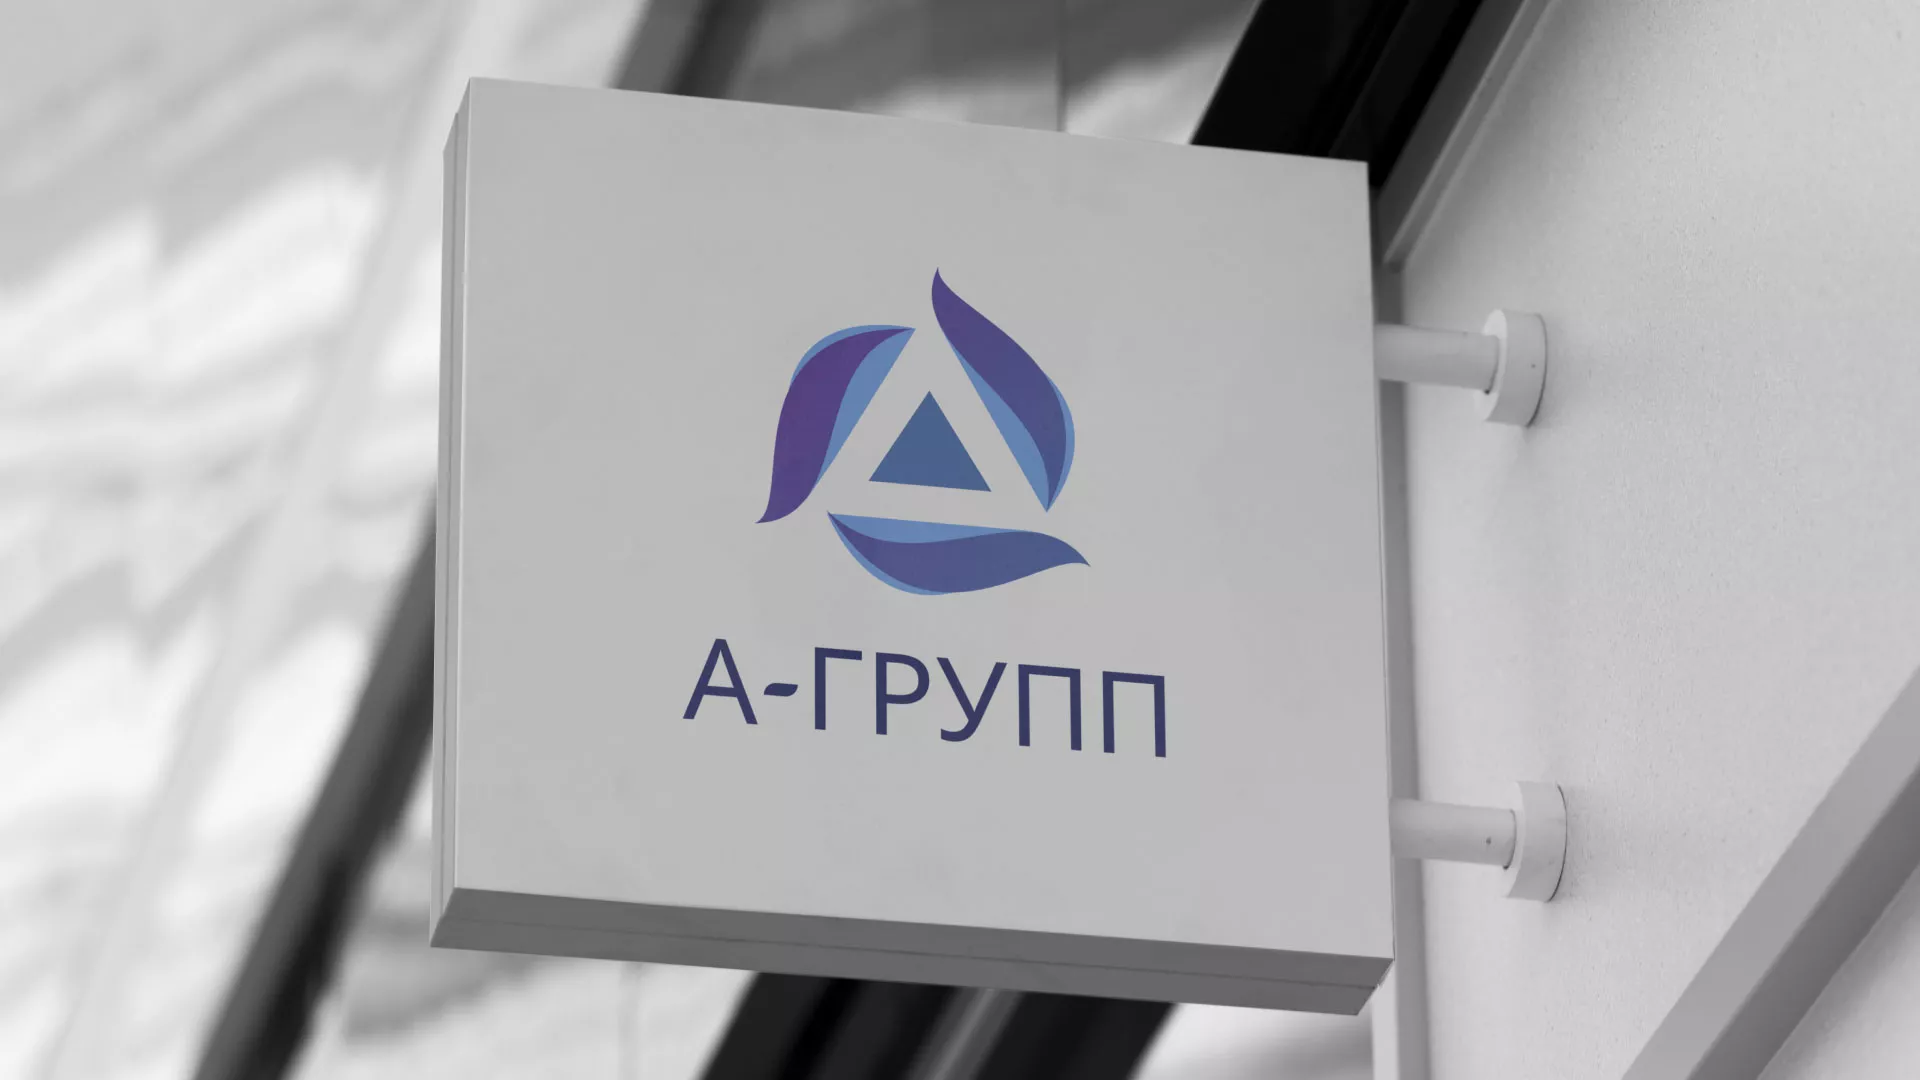 Создание логотипа компании «А-ГРУПП» в Гдове